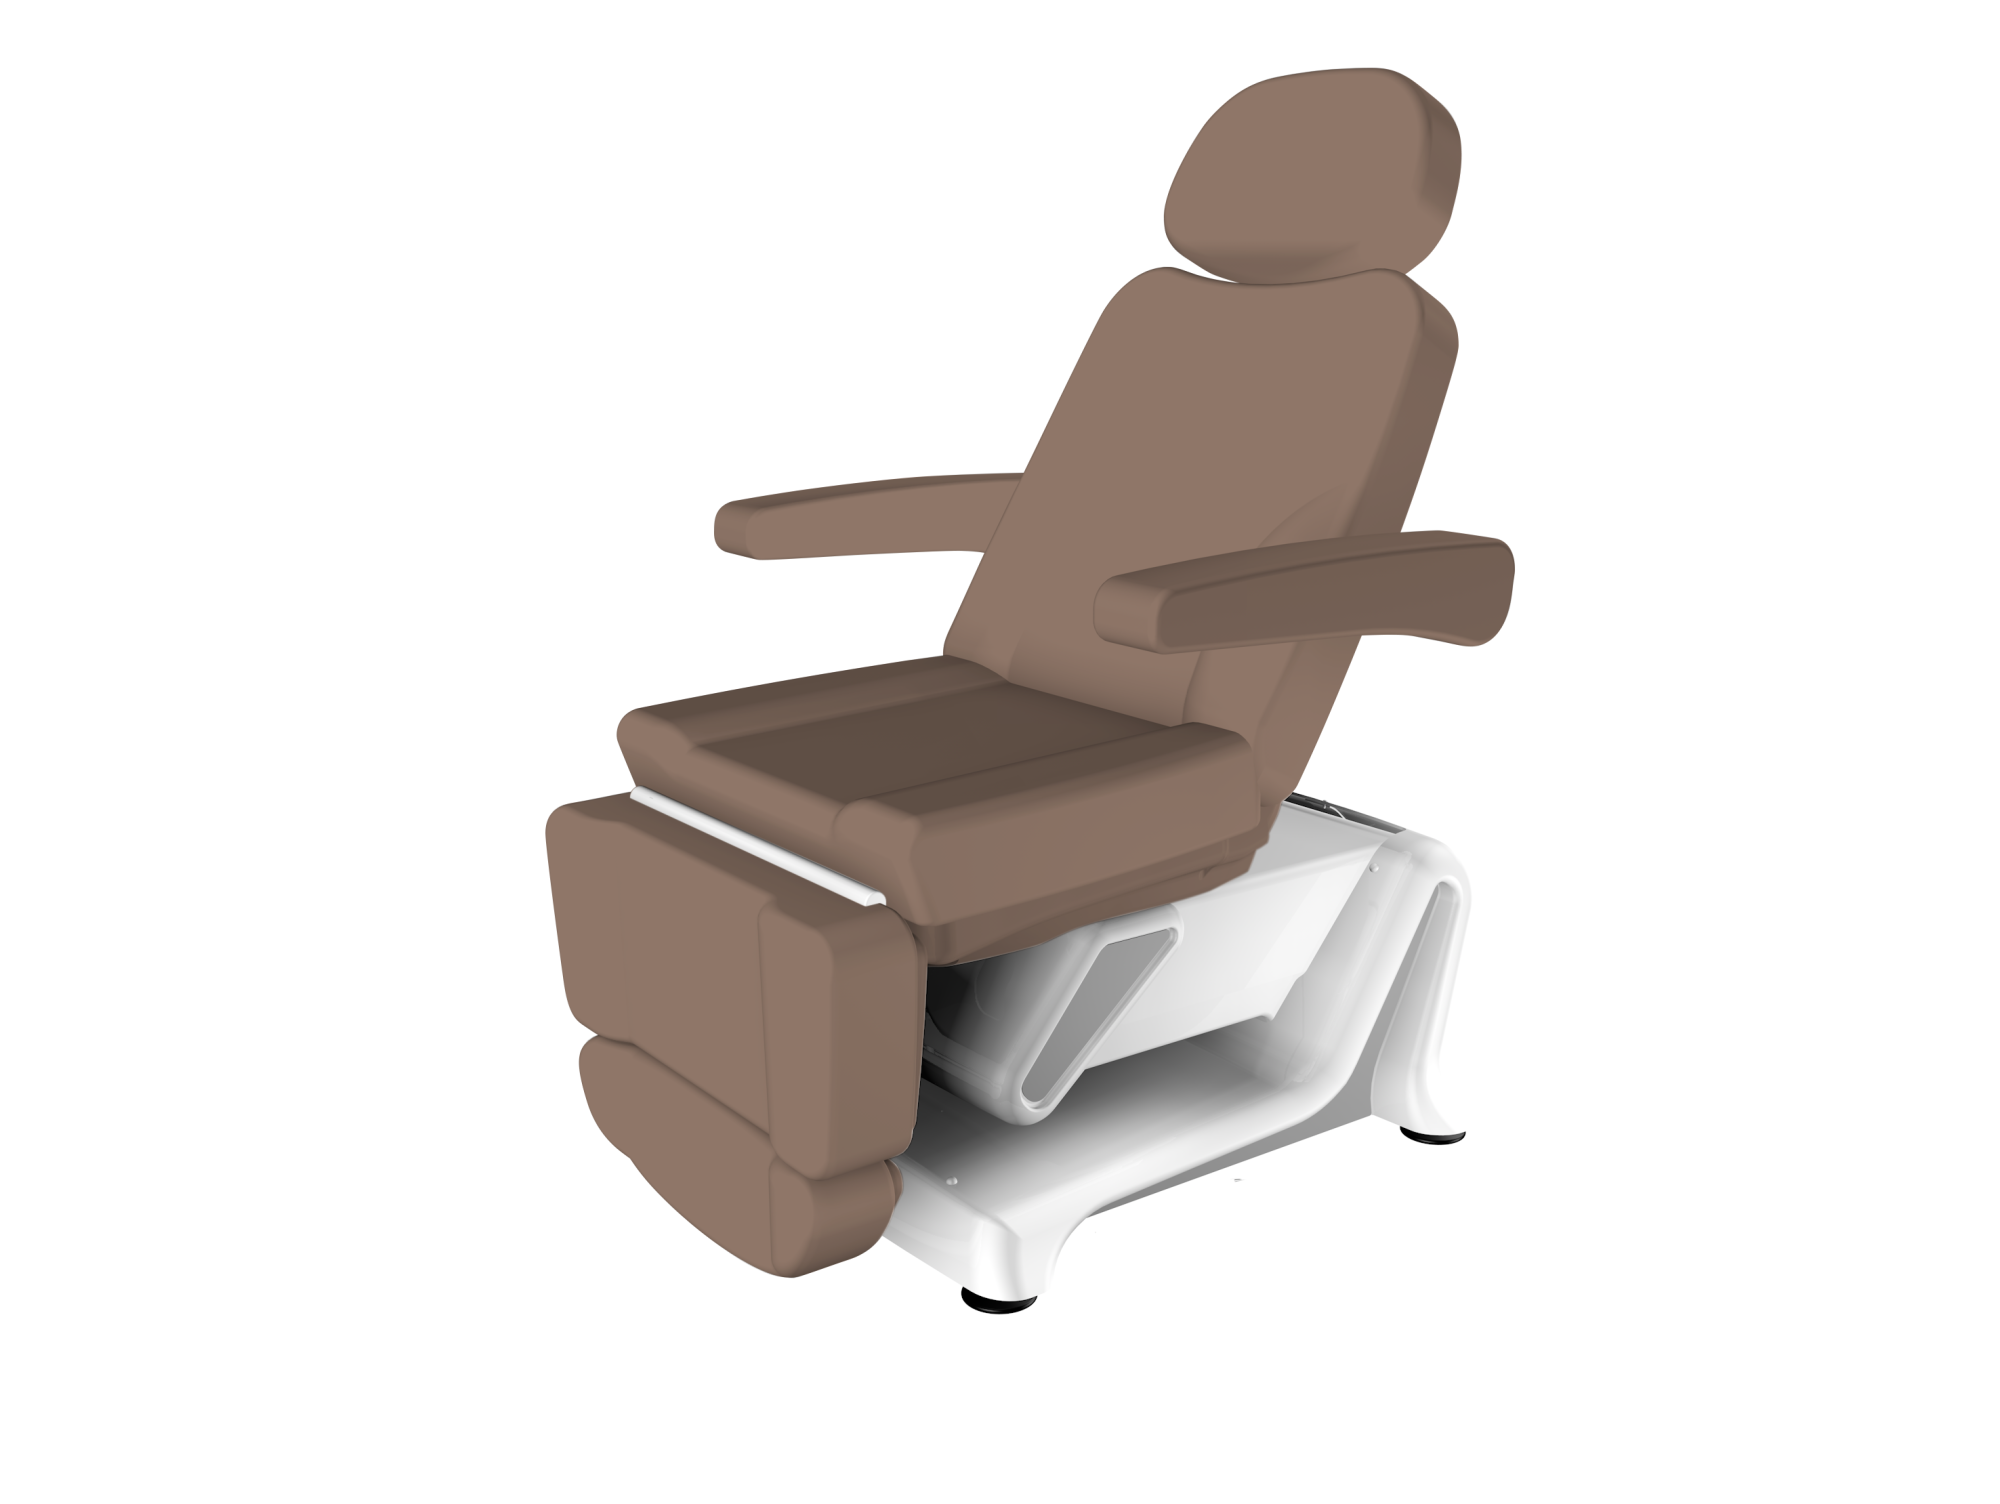 NEW! IONTO-KOMFORT XTENSION LIEGE косметологическое кресло-кушетка, мягкая обивка, коричневый цвет